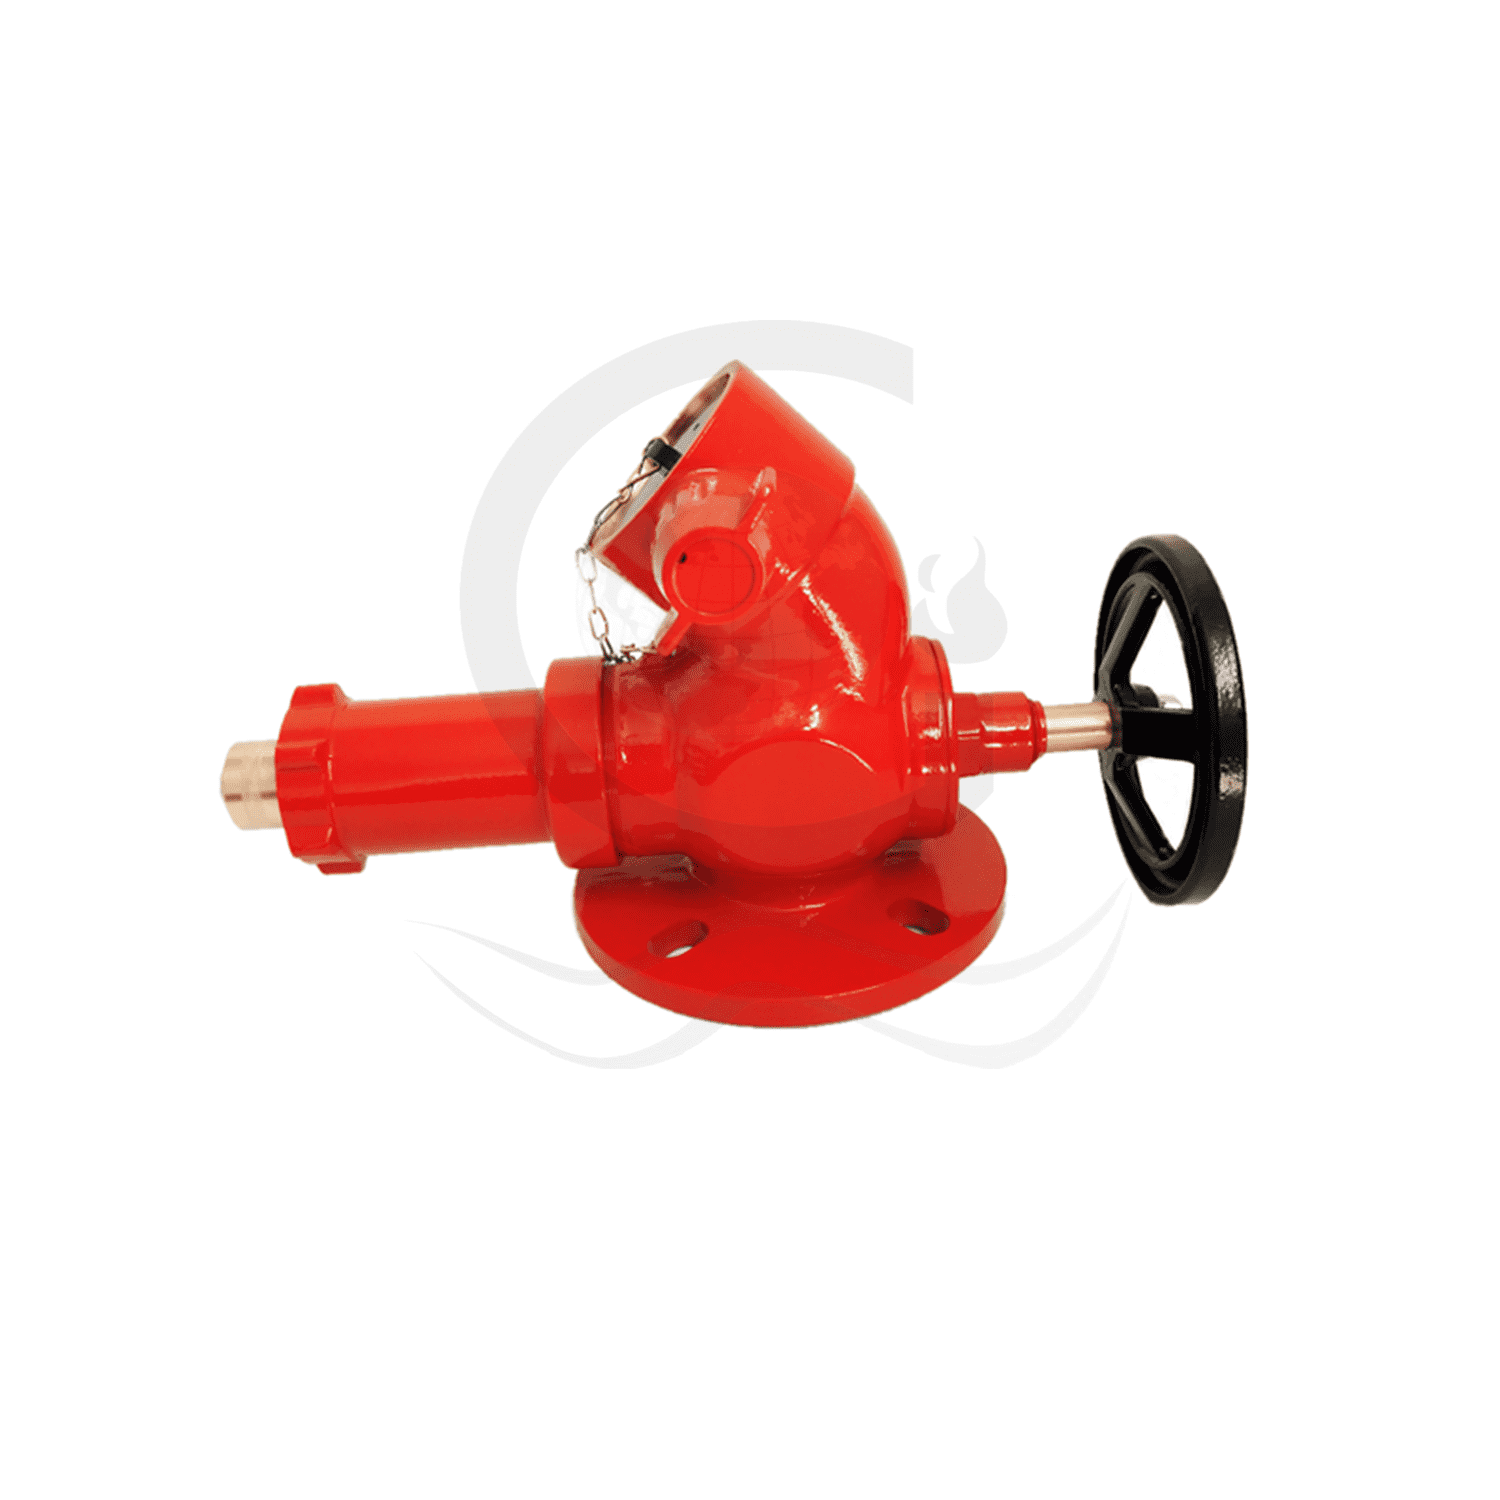 Flange pressure reducing valve Featured Image